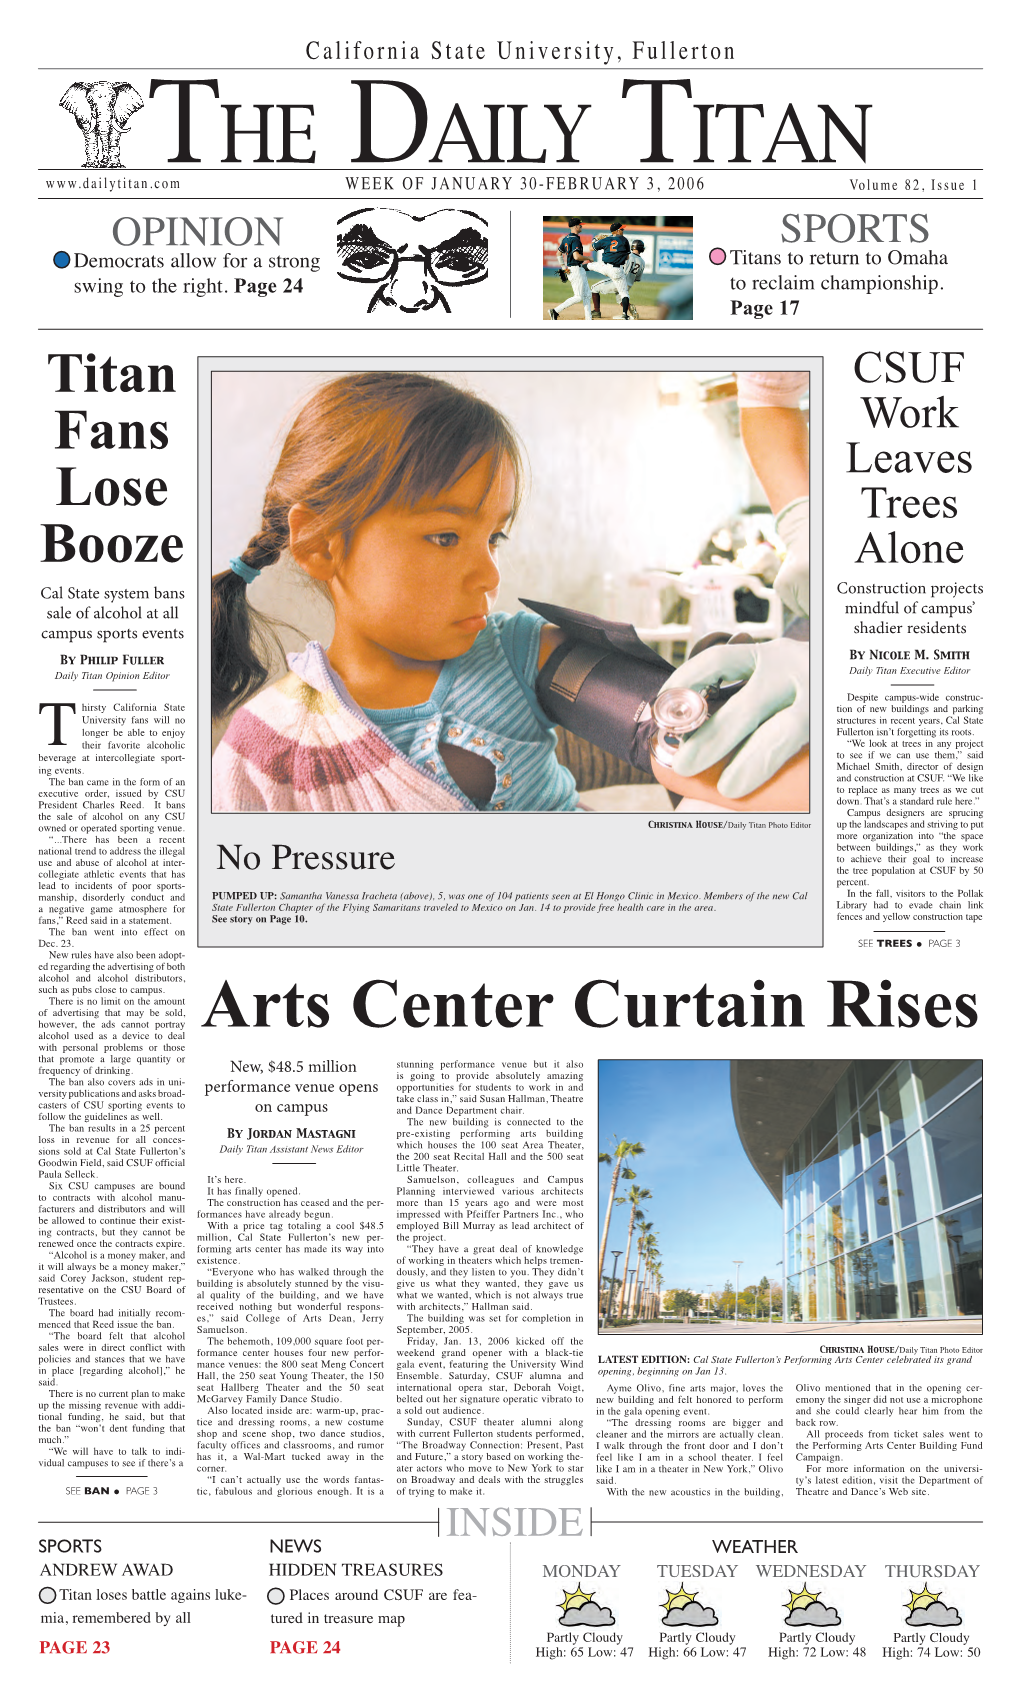 Arts Center Curtain Rises